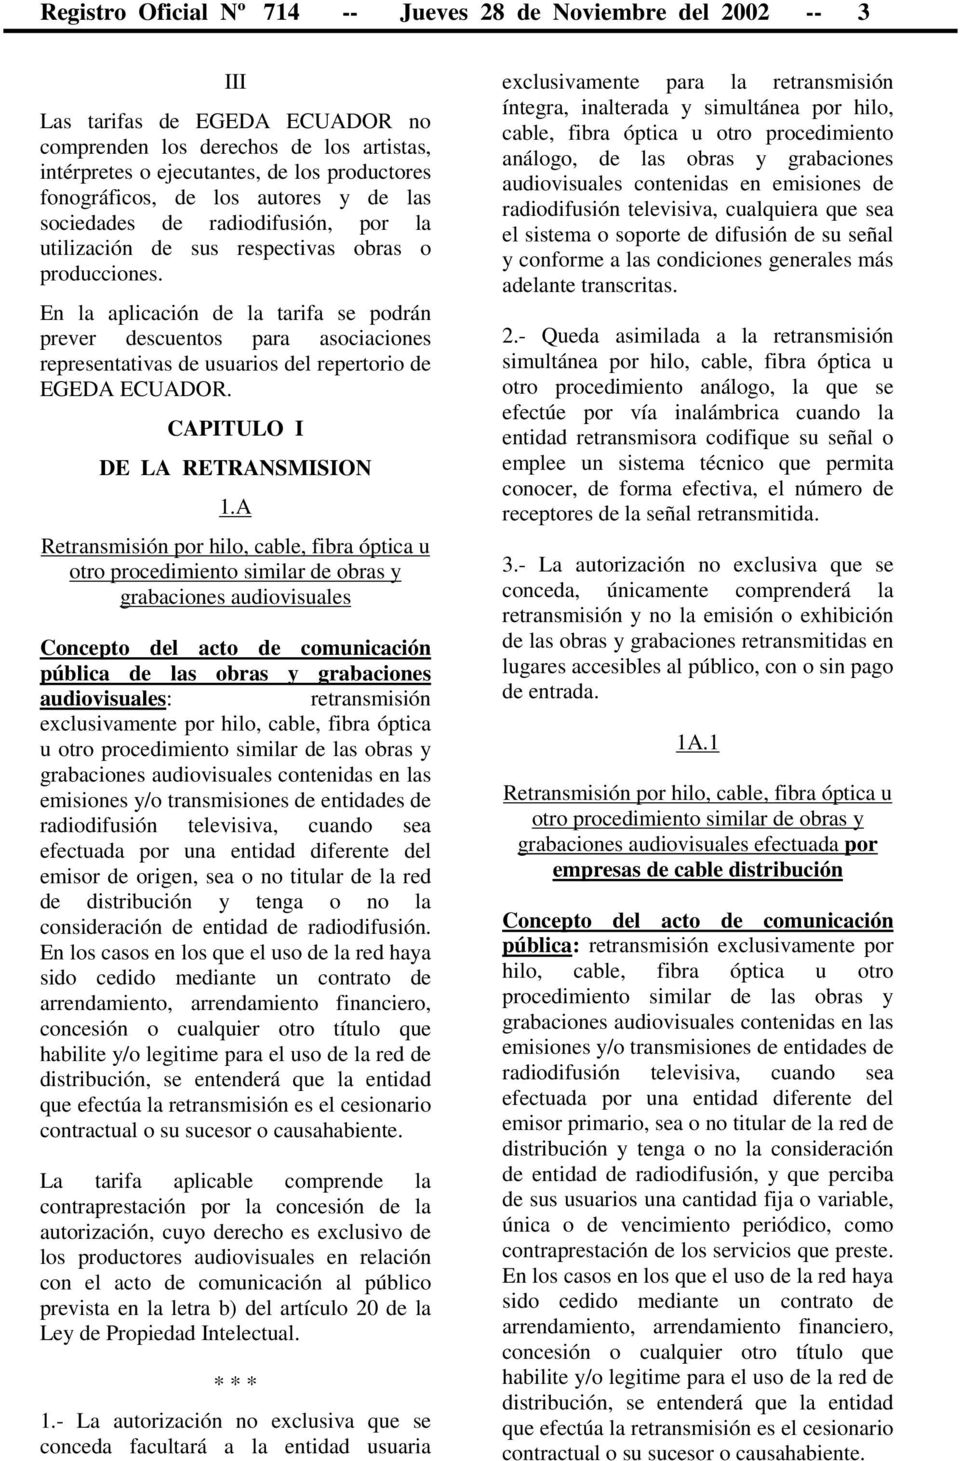 En la aplicación de la tarifa se podrán prever descuentos para asociaciones representativas de usuarios del repertorio de EGEDA ECUADOR. CAPITULO I DE LA RETRANSMISION 1.